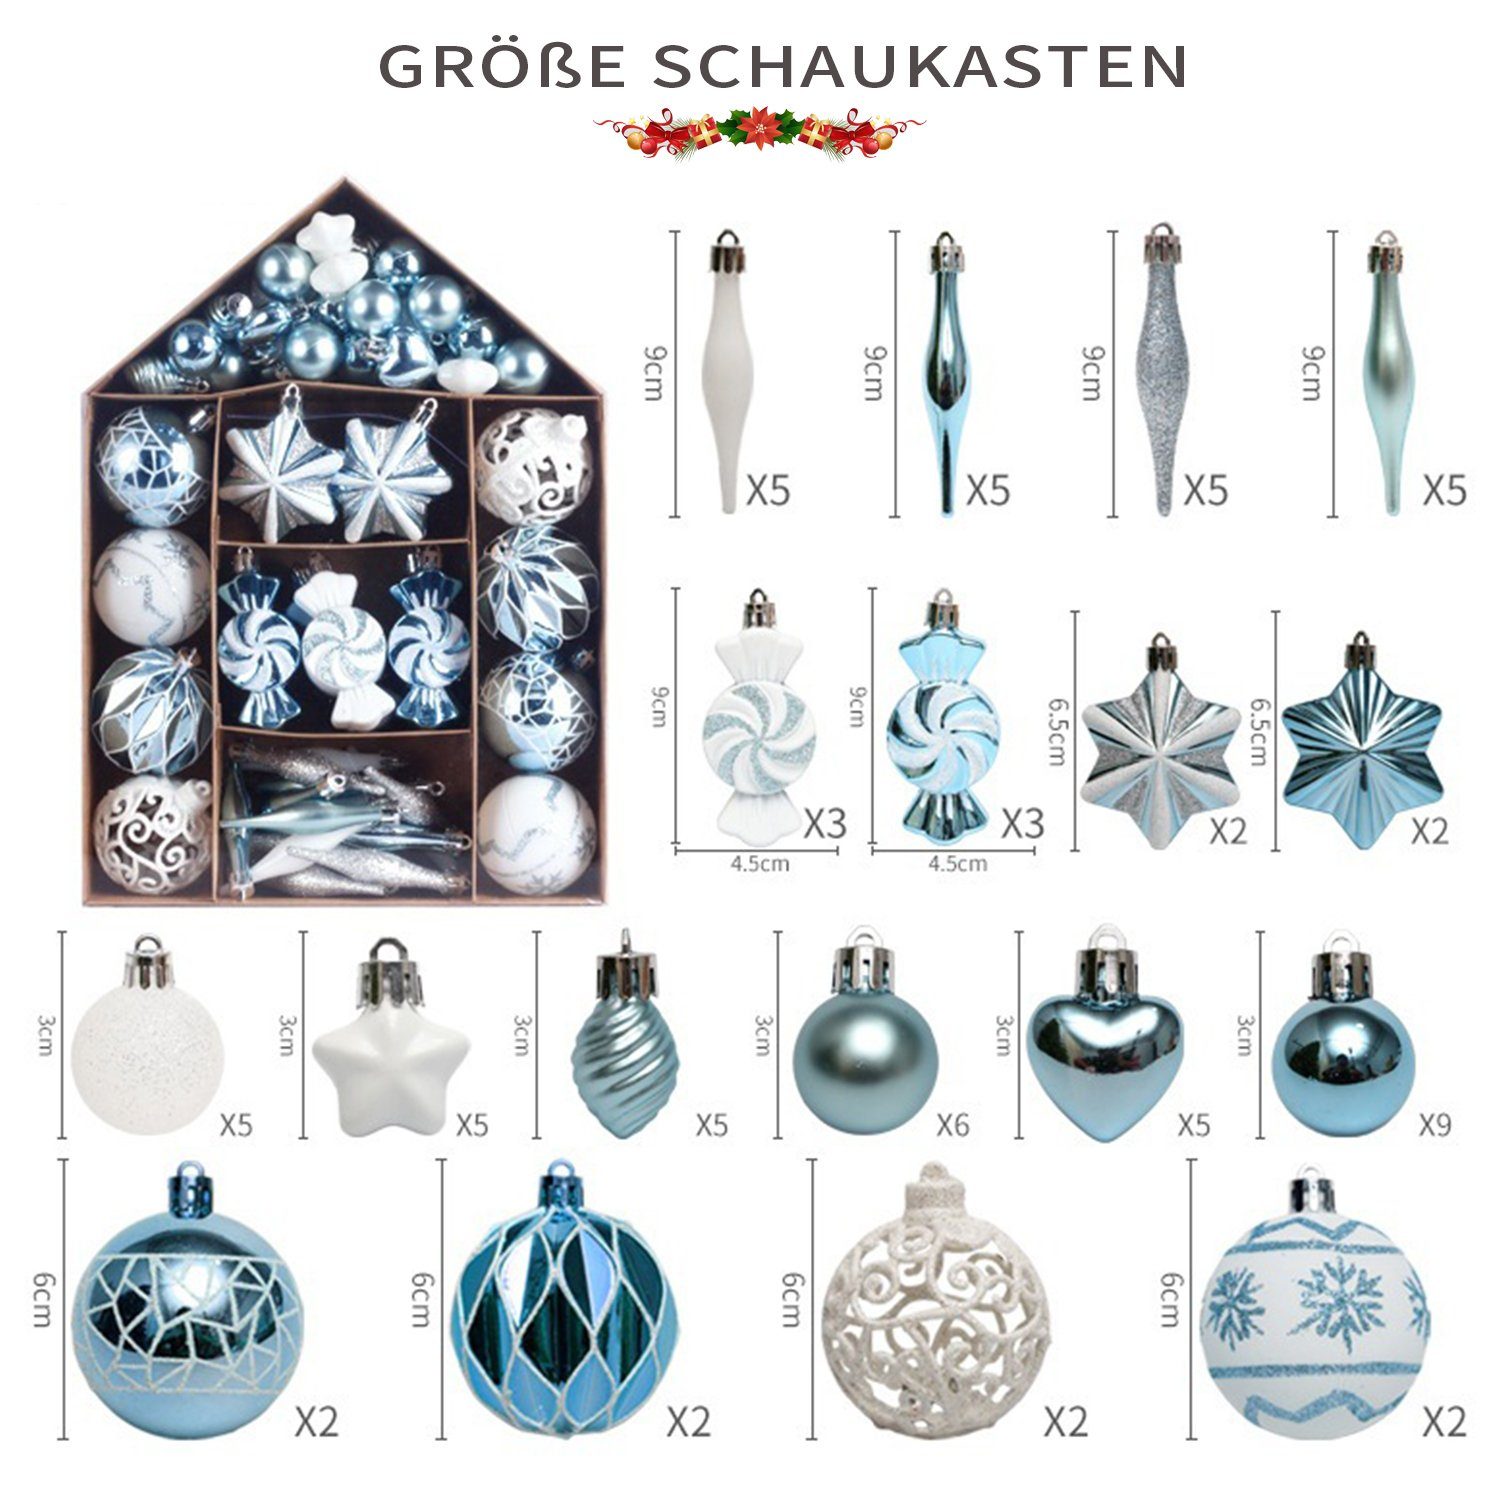 Ornamente-Set MAGICSHE Weihnachtsdeko Hellblau/Weiß Weihnachtsbaumkugel 73tlg